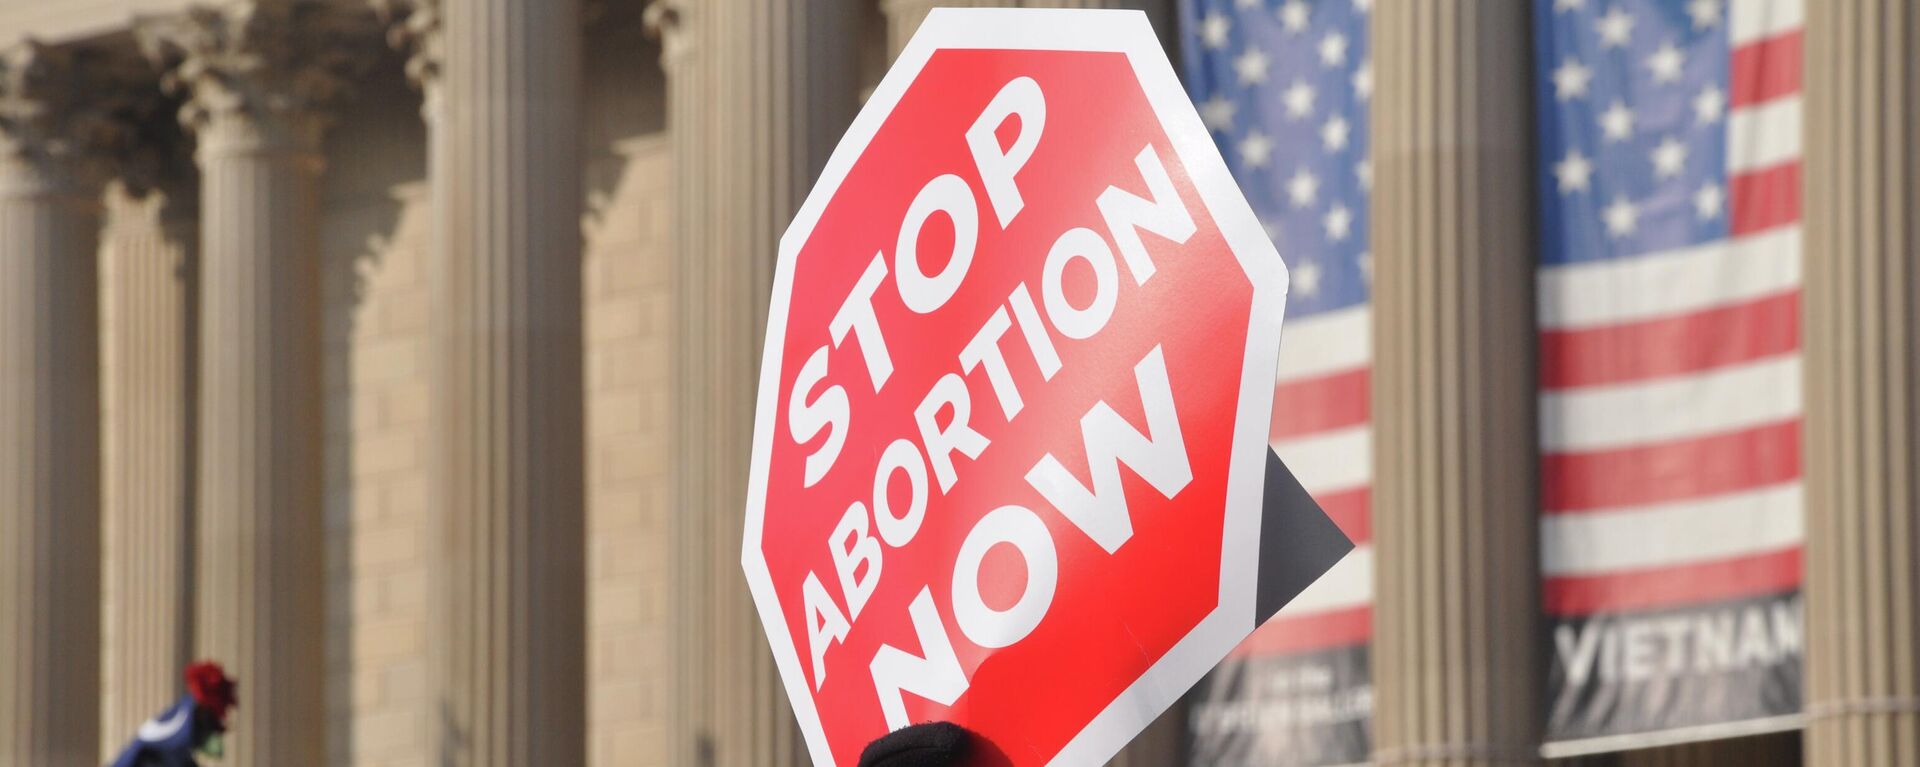 Protesta en contra del aborto en Estados Unidos - Sputnik Mundo, 1920, 13.05.2022